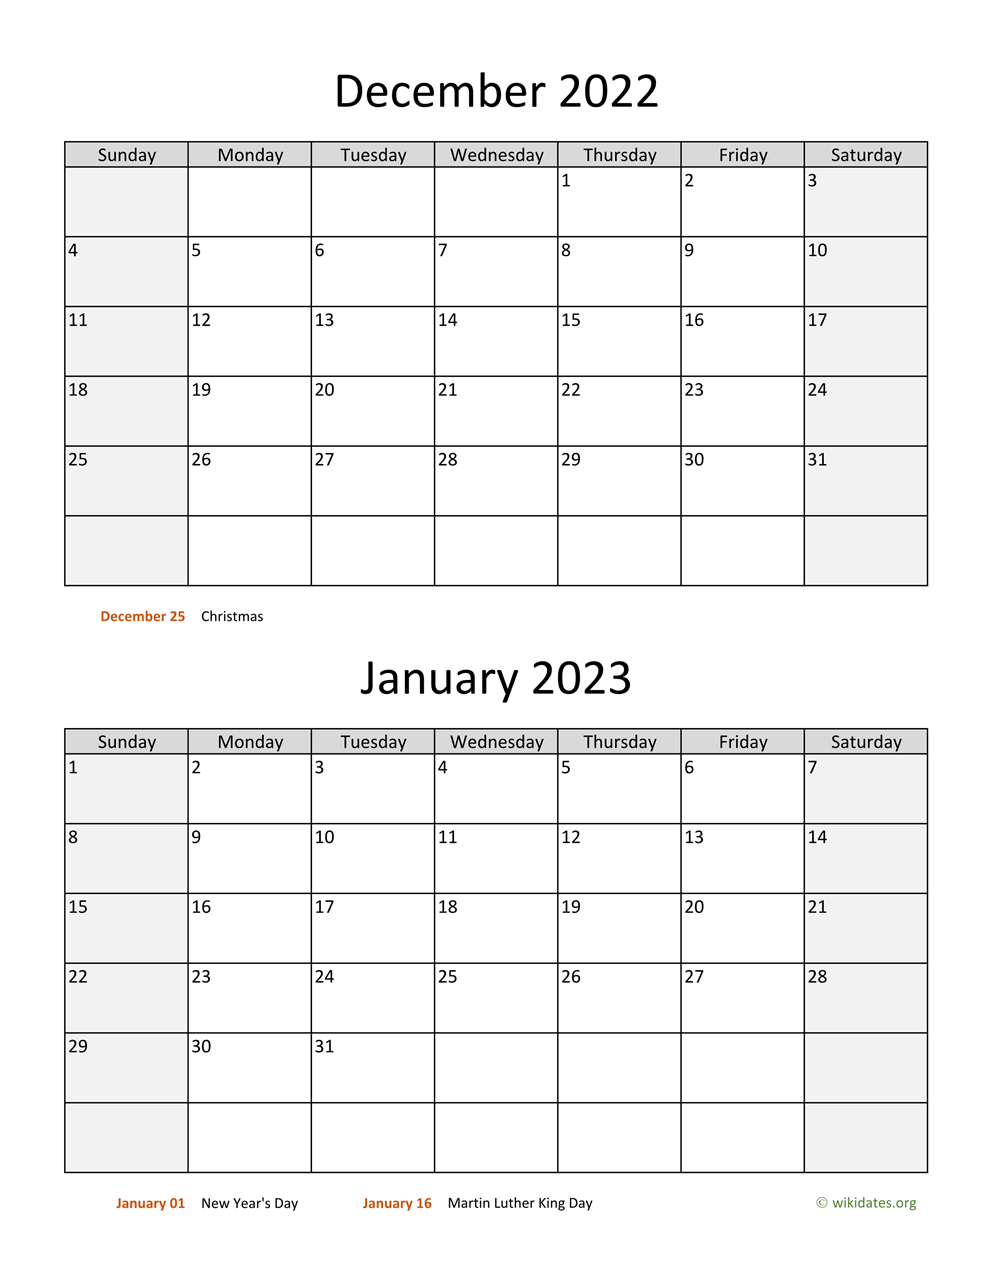 Dec 2022 Jan 2023 Calendar December 2022 And January 2023 Calendar | Wikidates.org